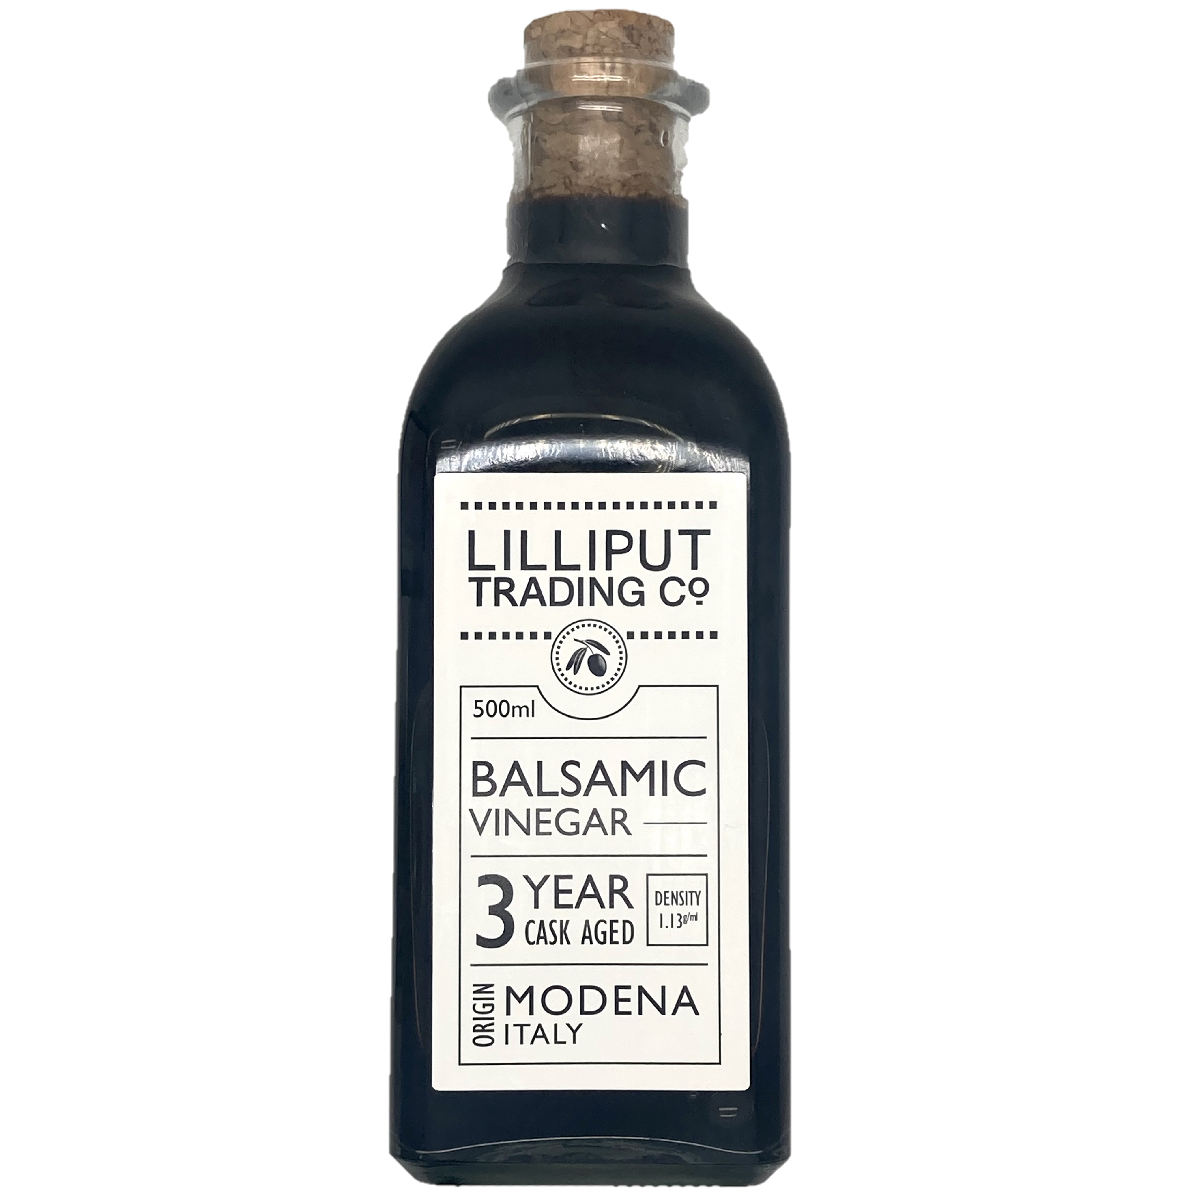 Lilliput Trading Co. 3 Year Cask Aged Balsamic Vinegar 500ml